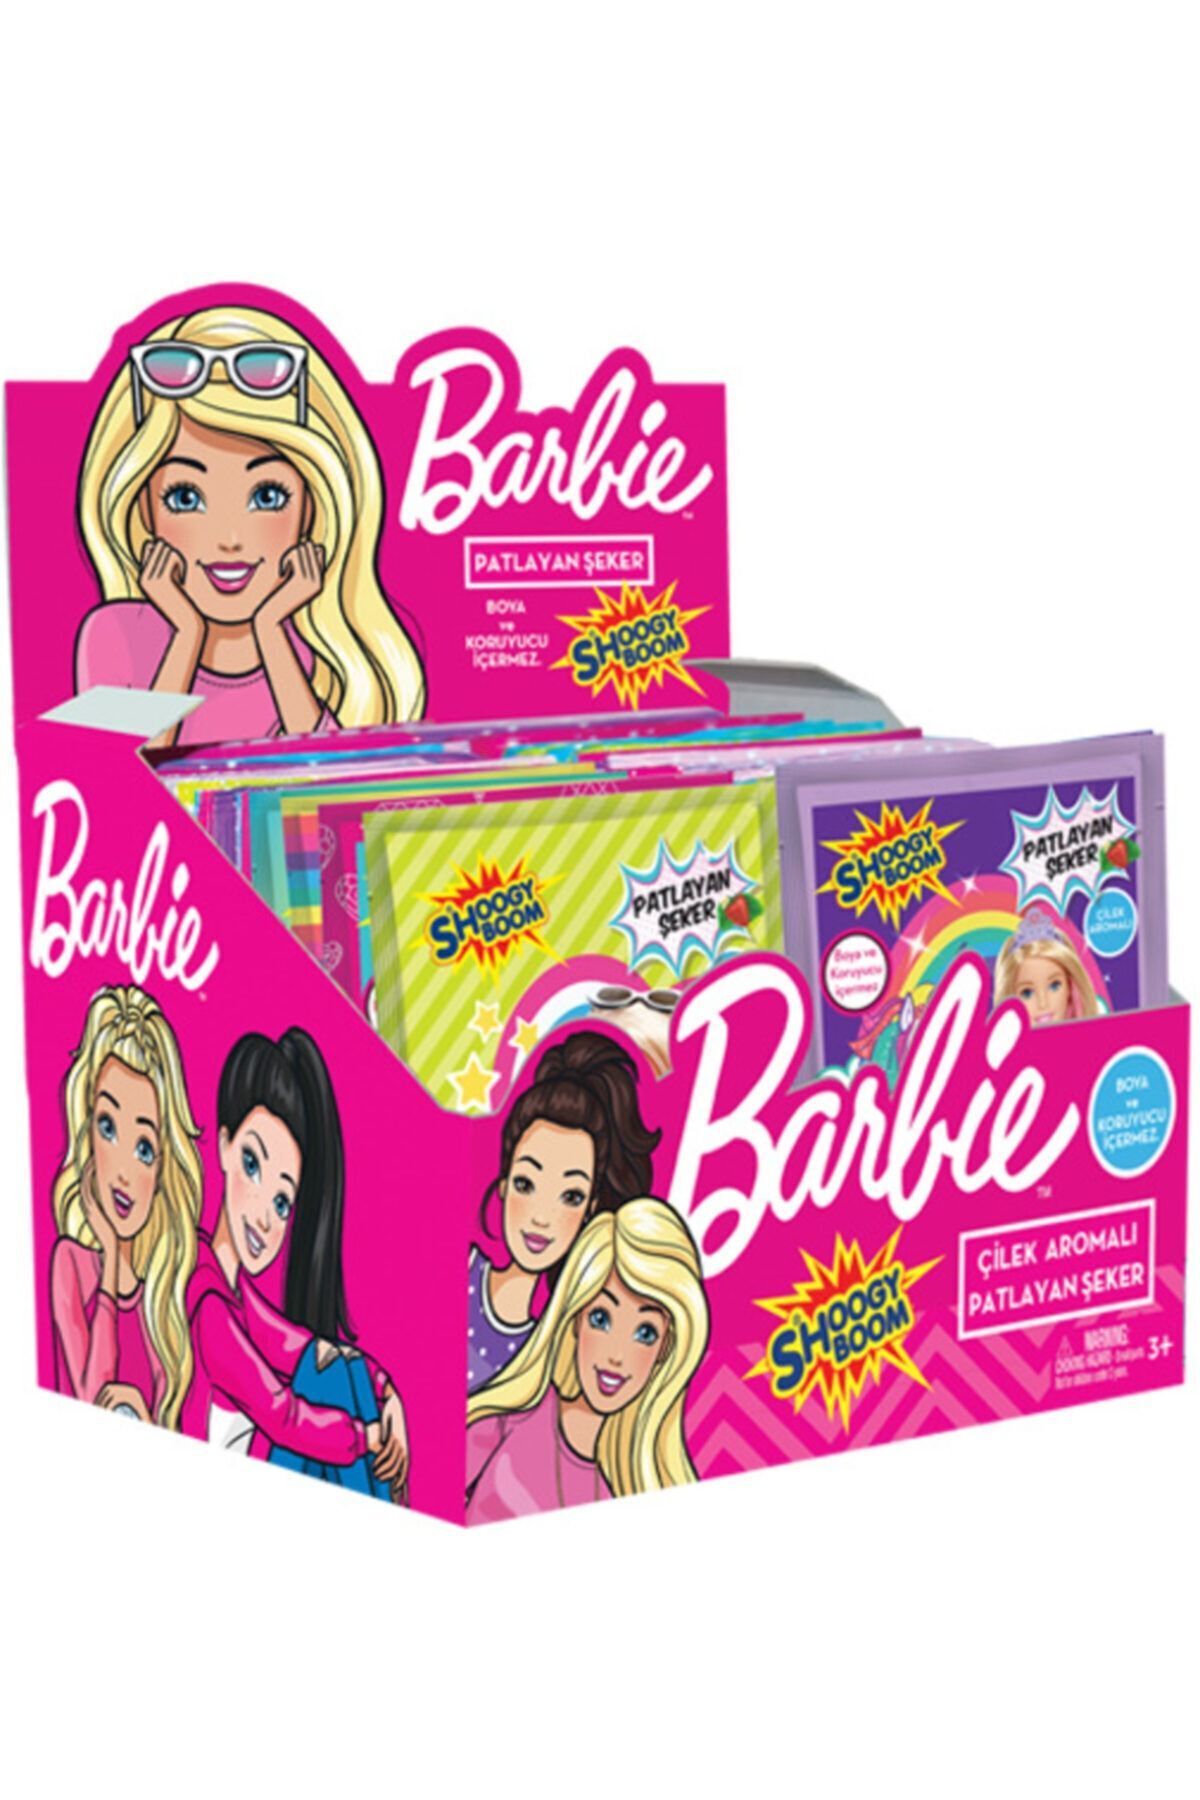 Hleks Barbie Çilek Aromalı Patlayan Şeker (40 Paket)